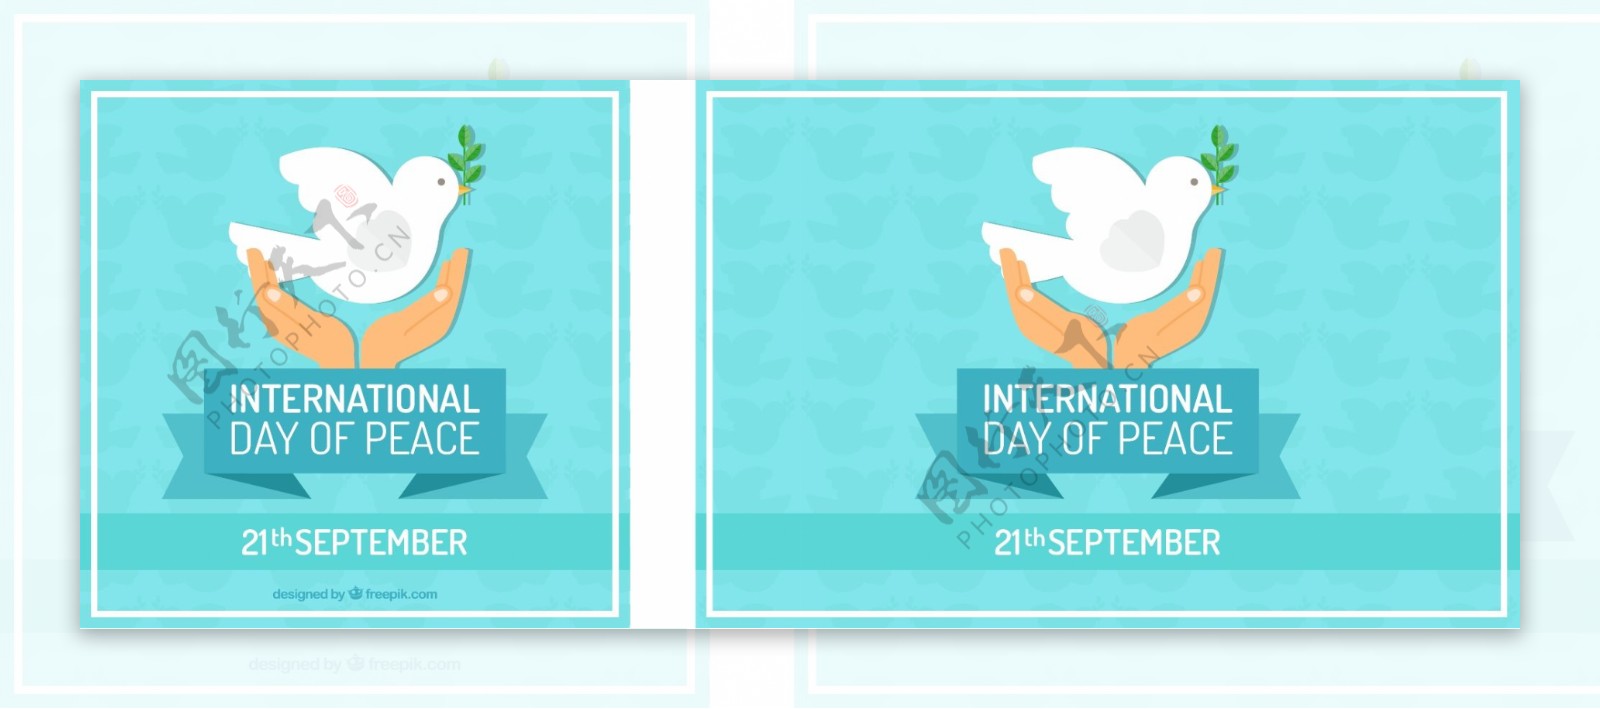 和平国际日的扁平式背景